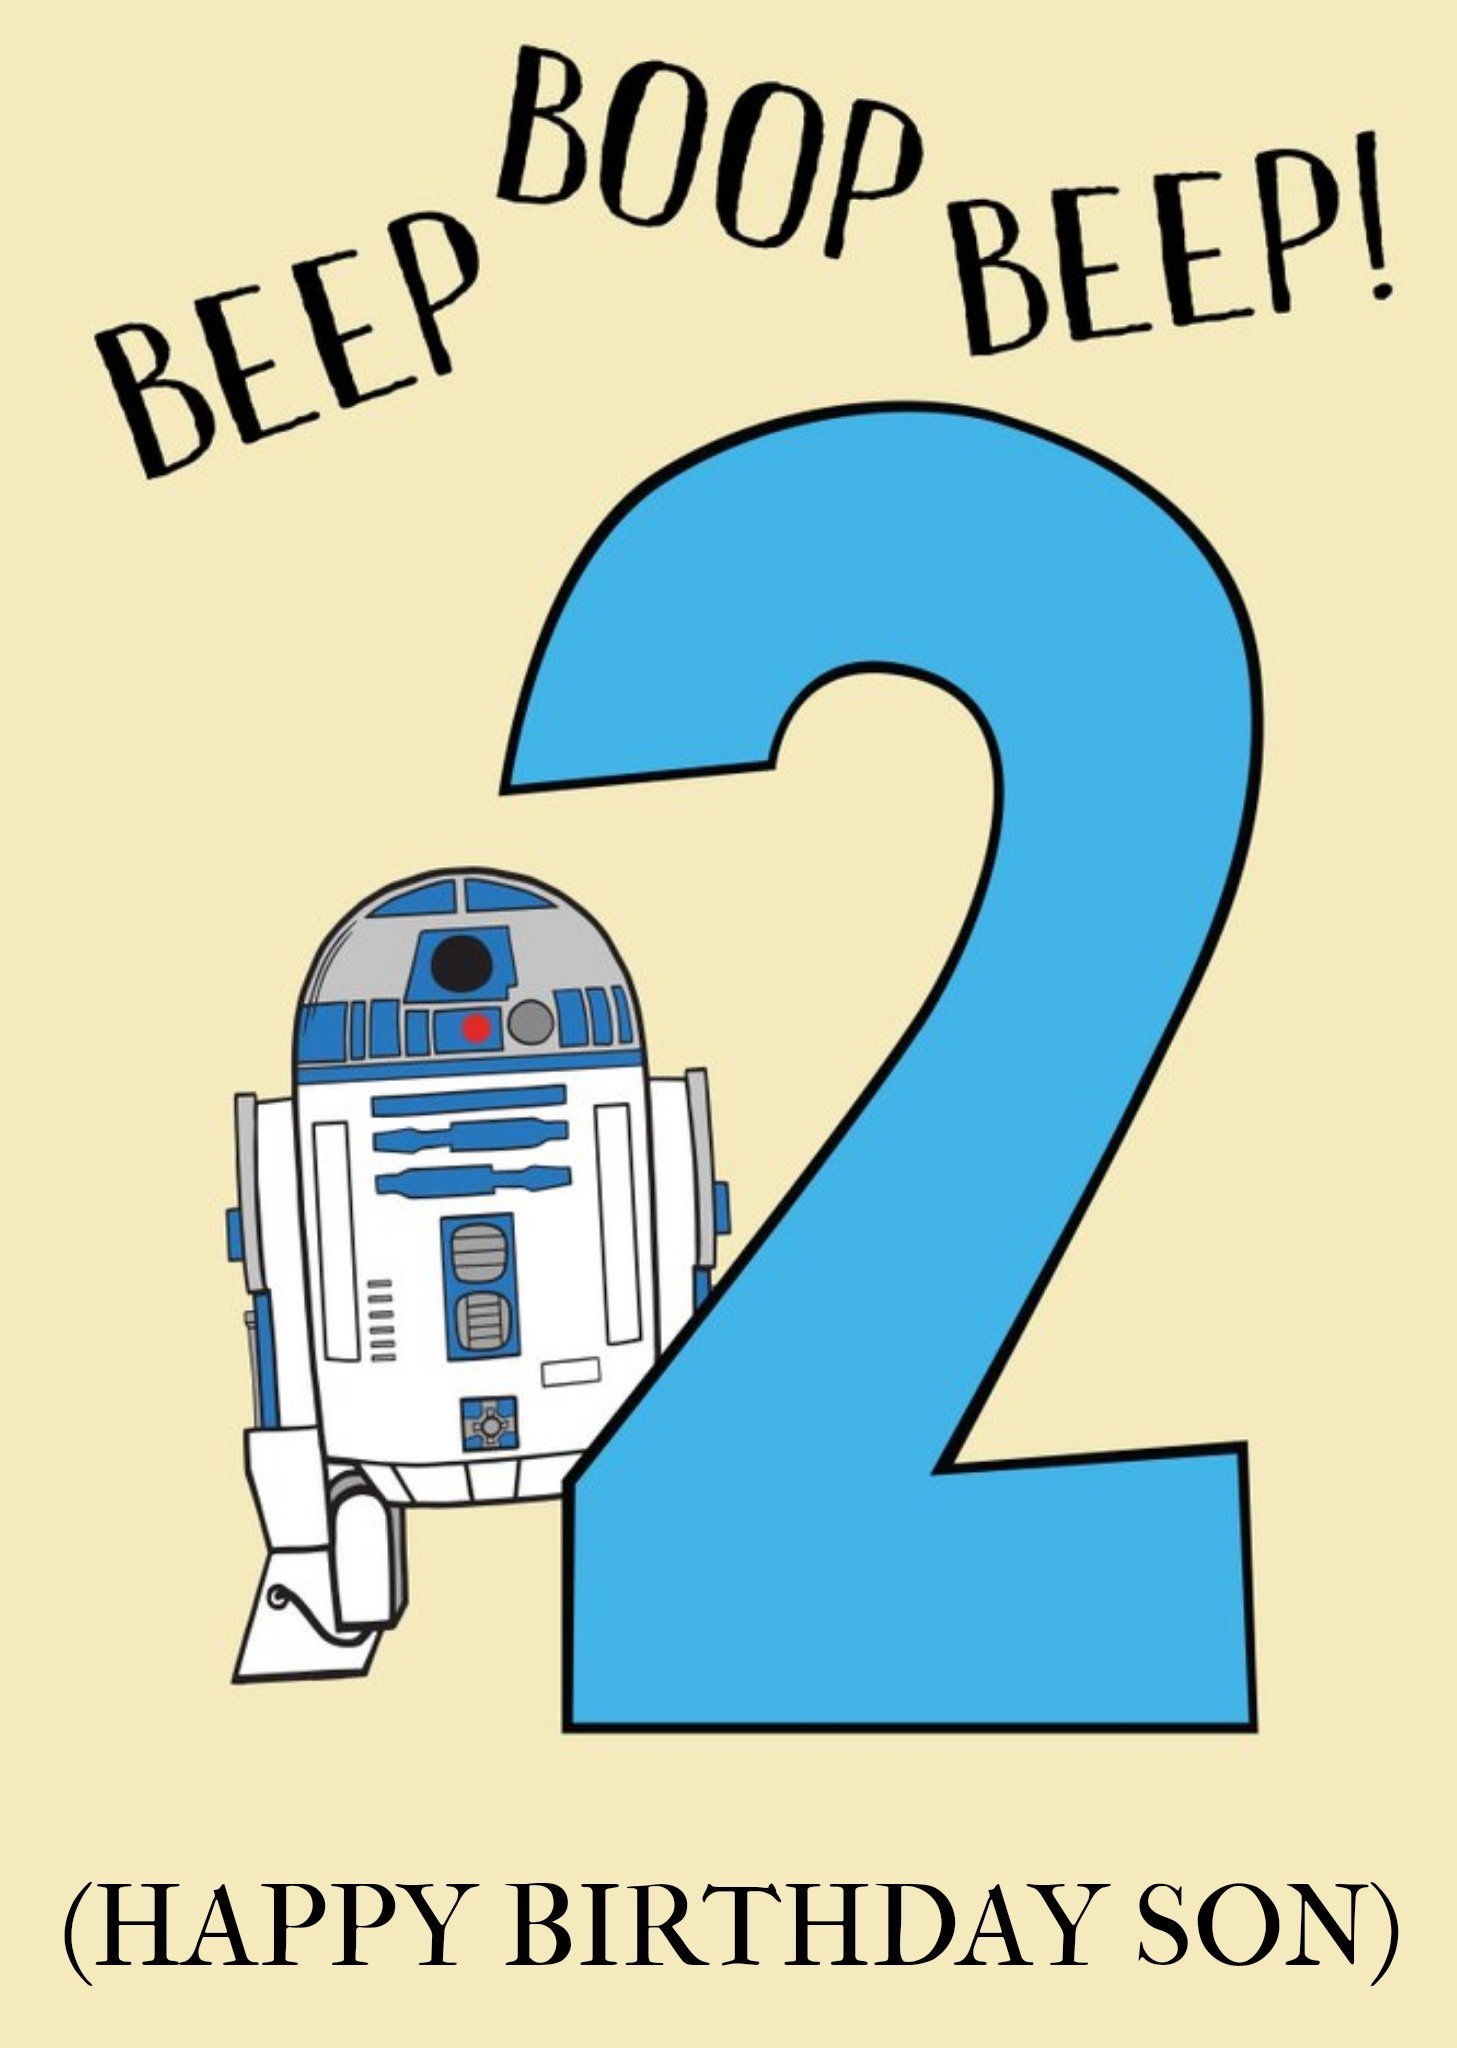 Disney Star Wars Beep Boop Beep Happy Birthday Son Card Ecard